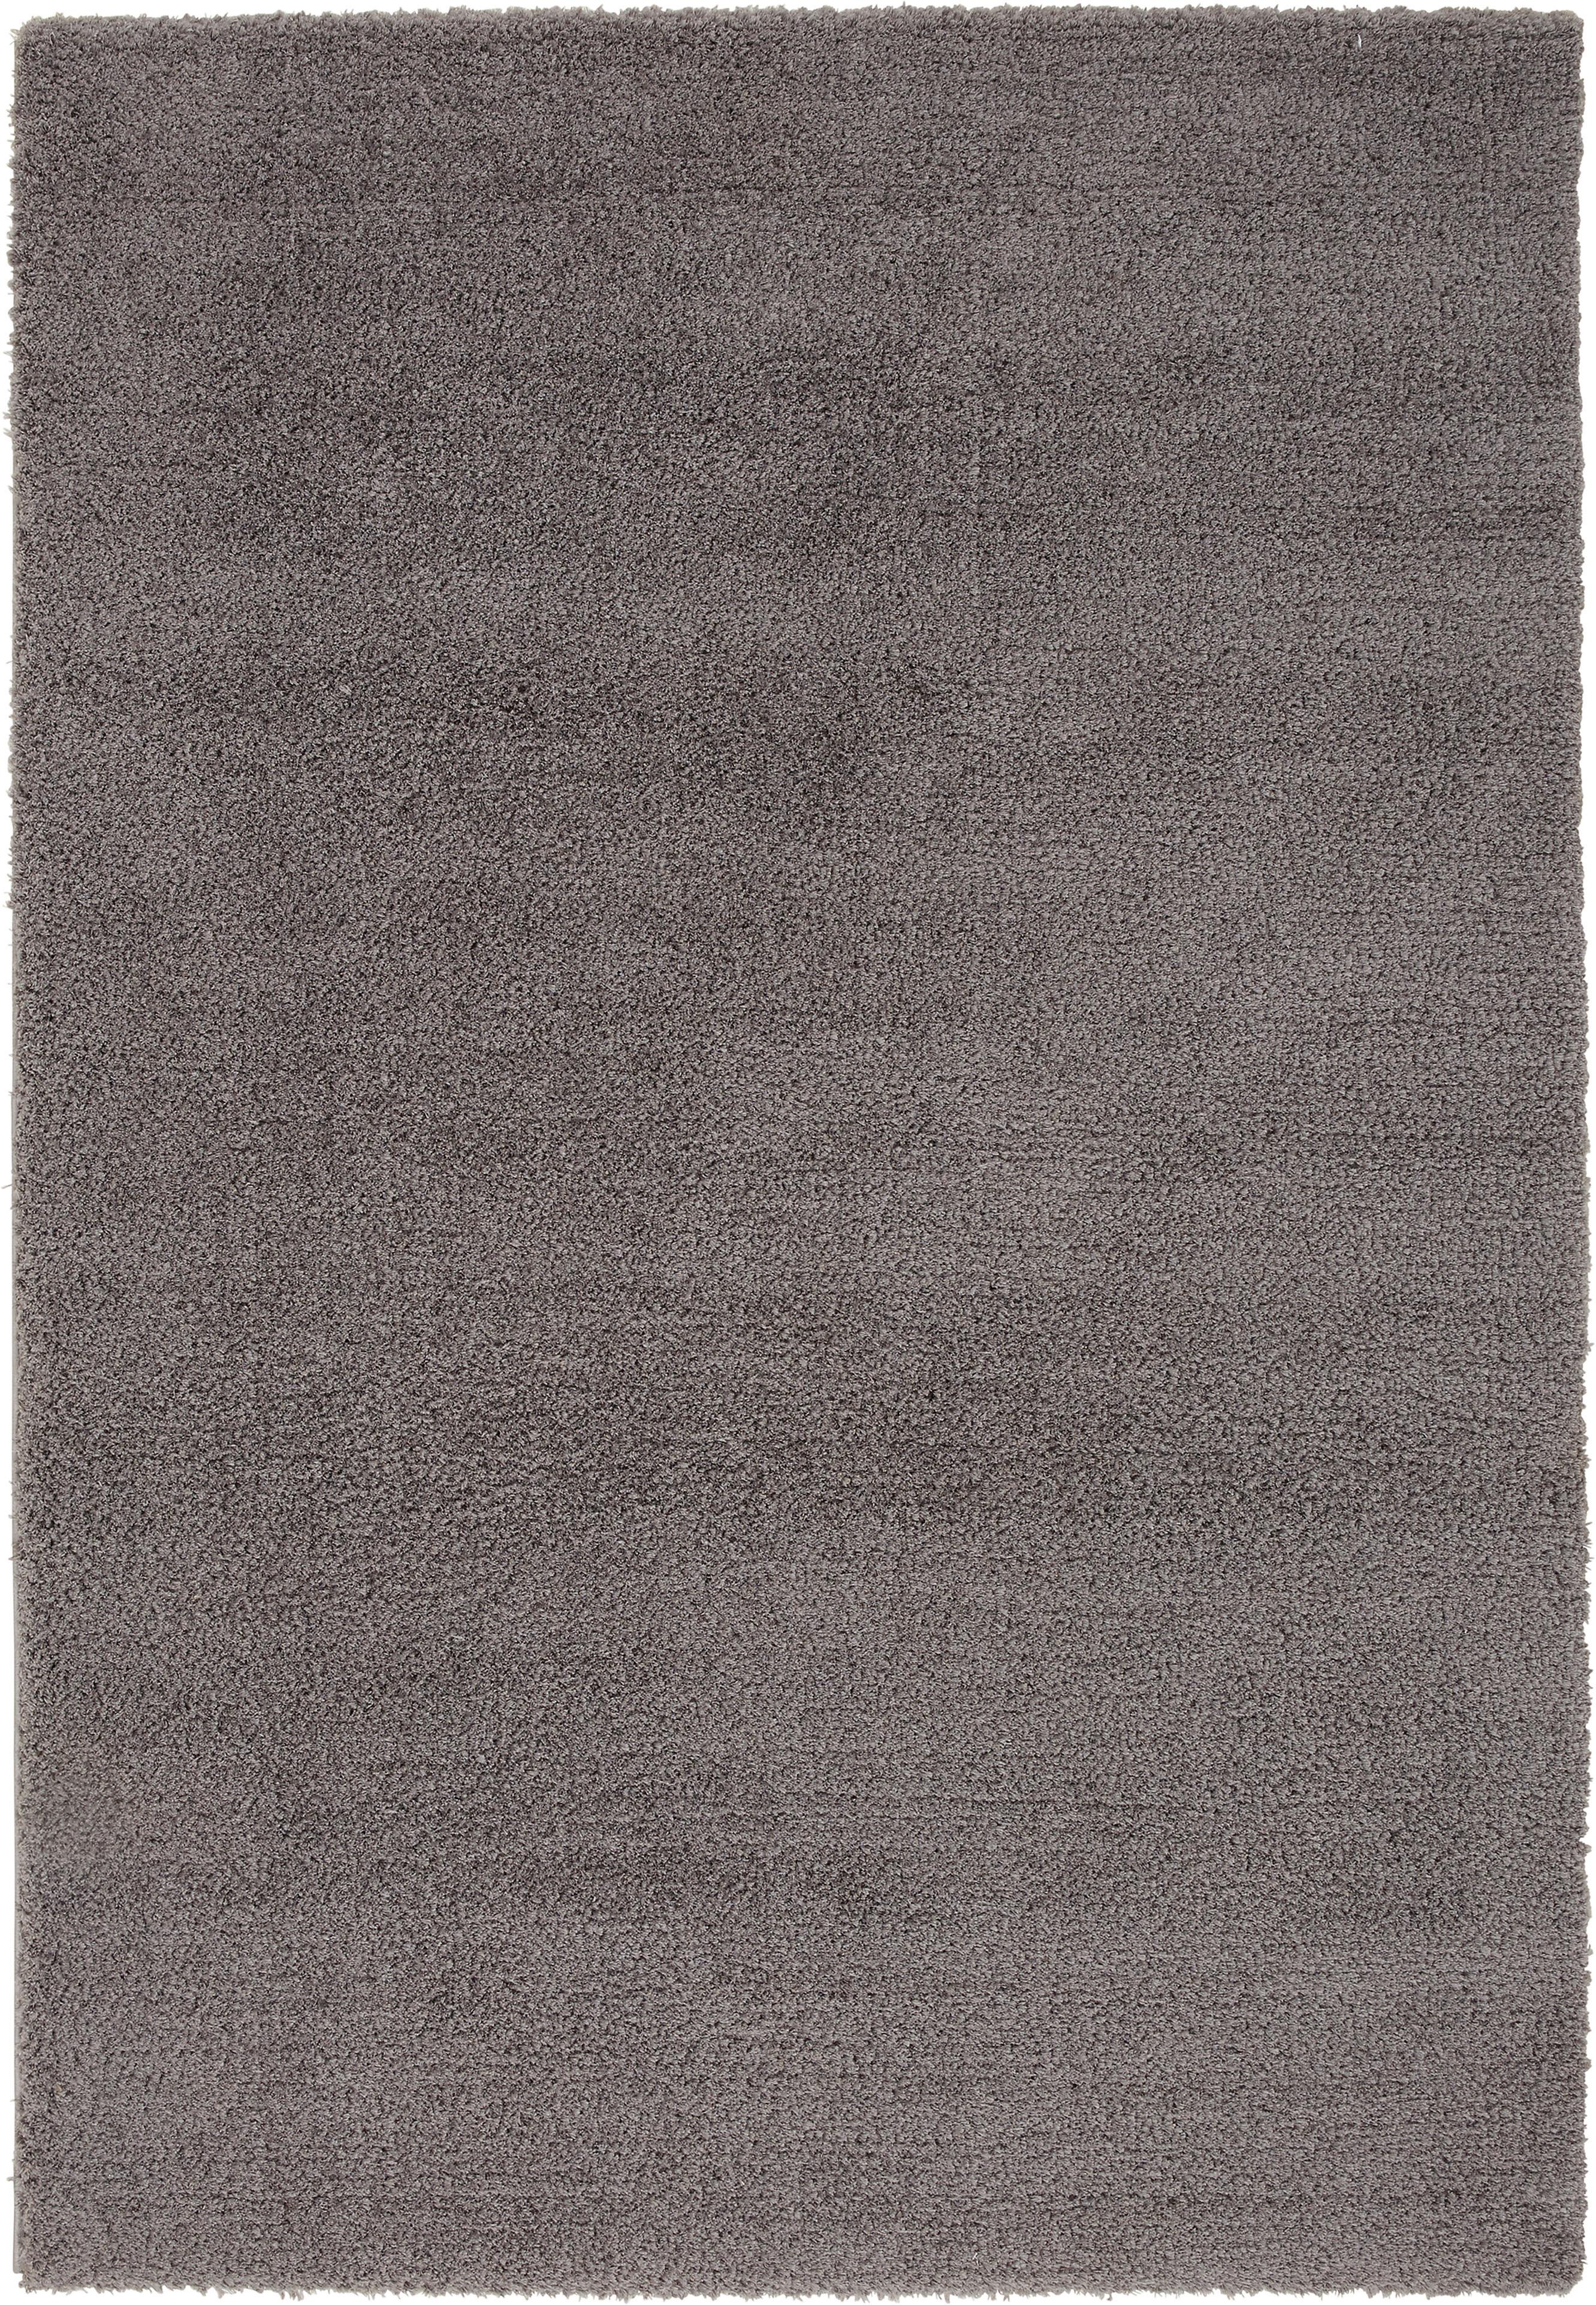 Shaggy Koberec Stefan 1, 80/150cm, Tm.šedá - tmavě šedá, Moderní, textil (80/150cm) - Modern Living